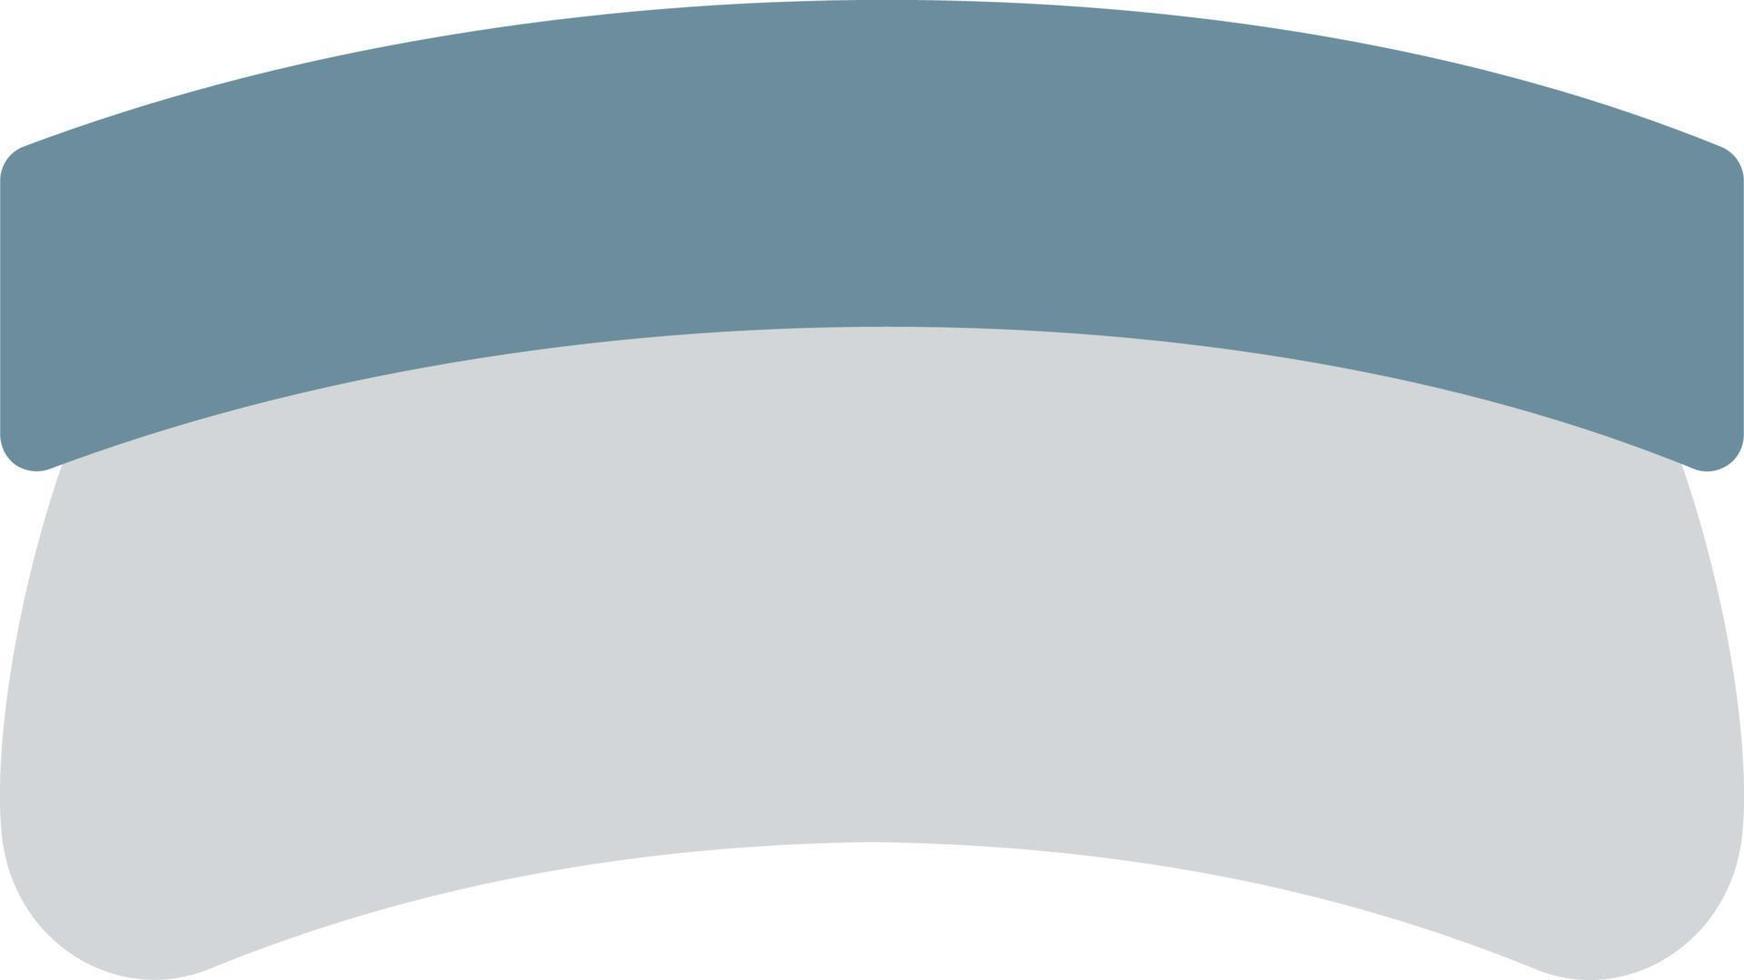 illustrazione vettoriale del cappuccio su uno sfondo. simboli di qualità premium. icone vettoriali per il concetto e la progettazione grafica.